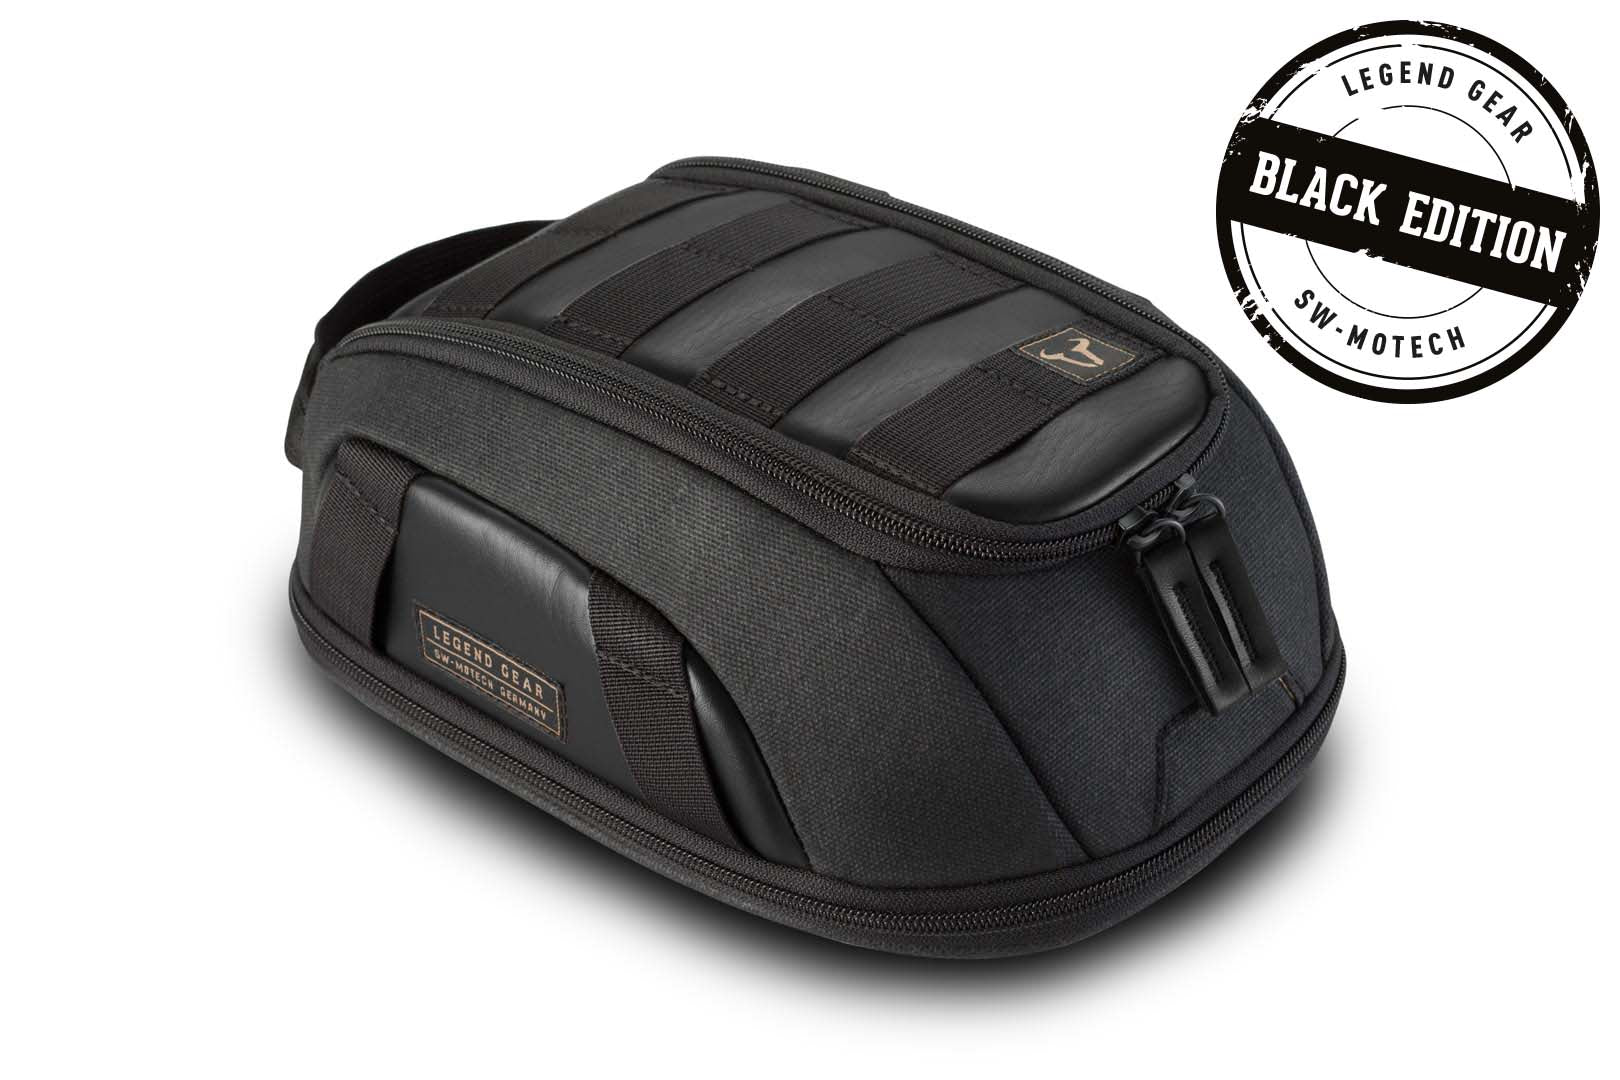 Legend Gear Magnetic Tank Bag LT1 30 - 55 litre Magnetic fastening Splash-proof Black Edition